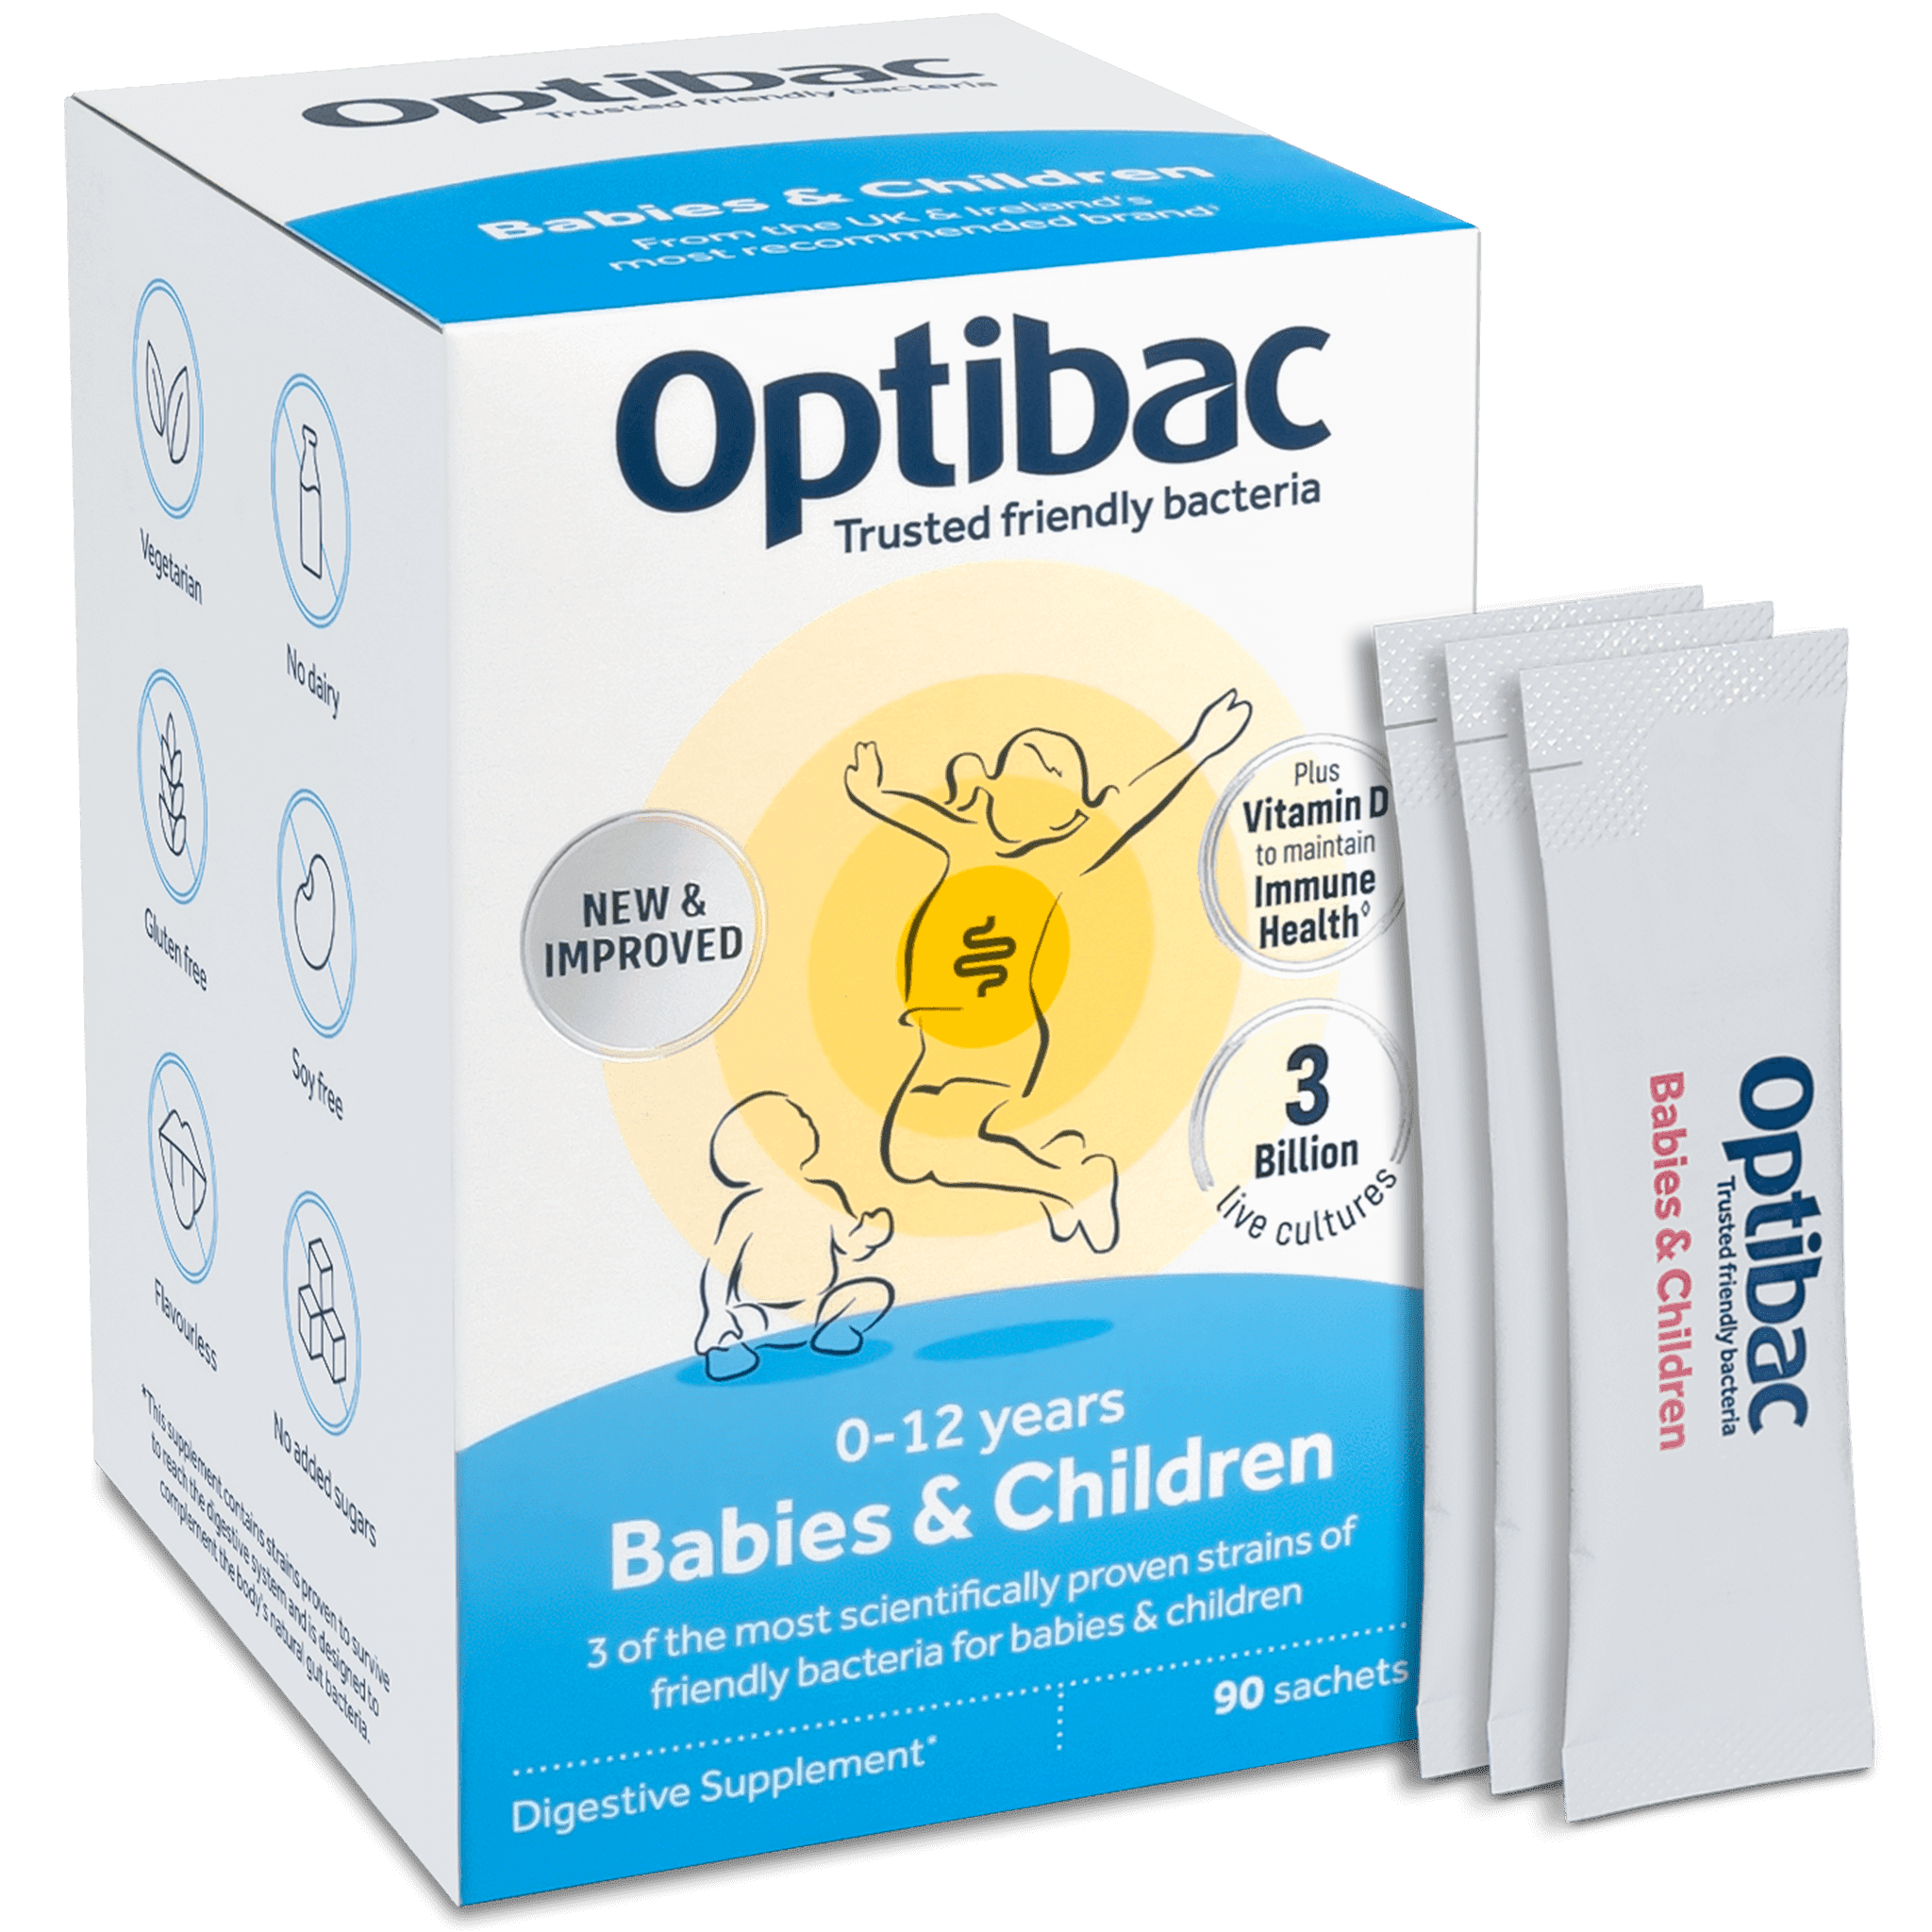 Babies & Children (90 sachets)